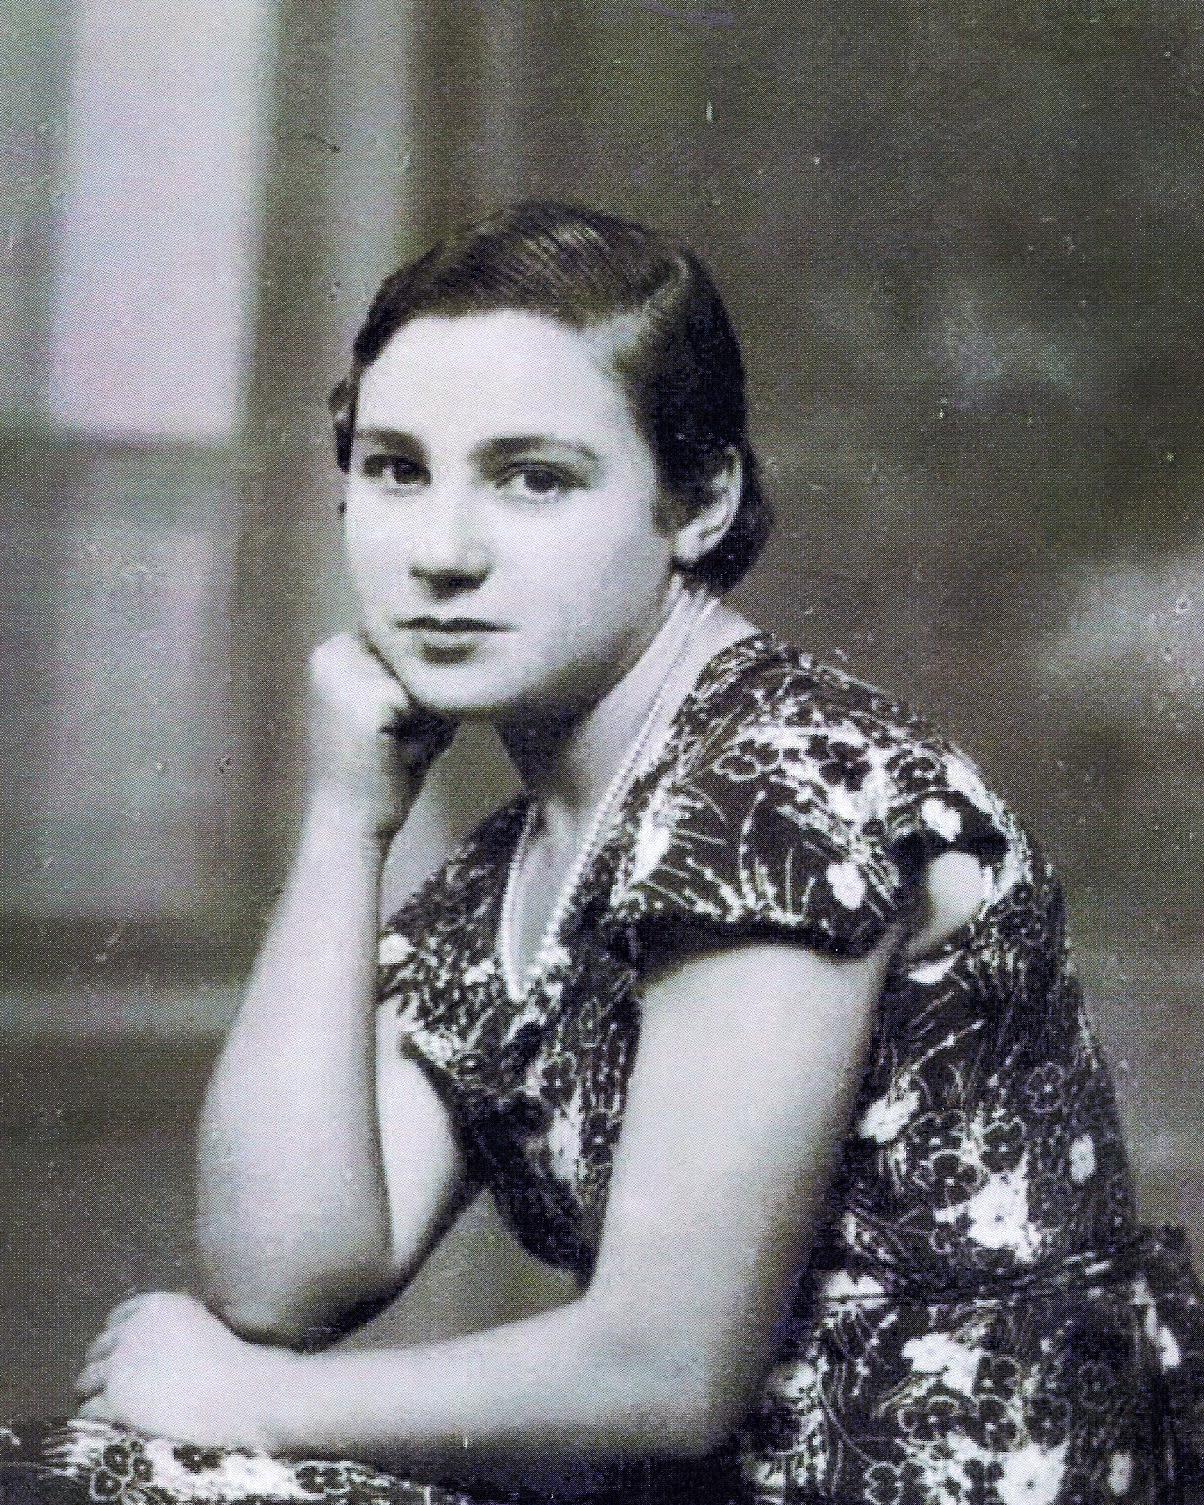 Ángeles Flórez Peón, memory keeper of Spanish Civil War, dies at 105